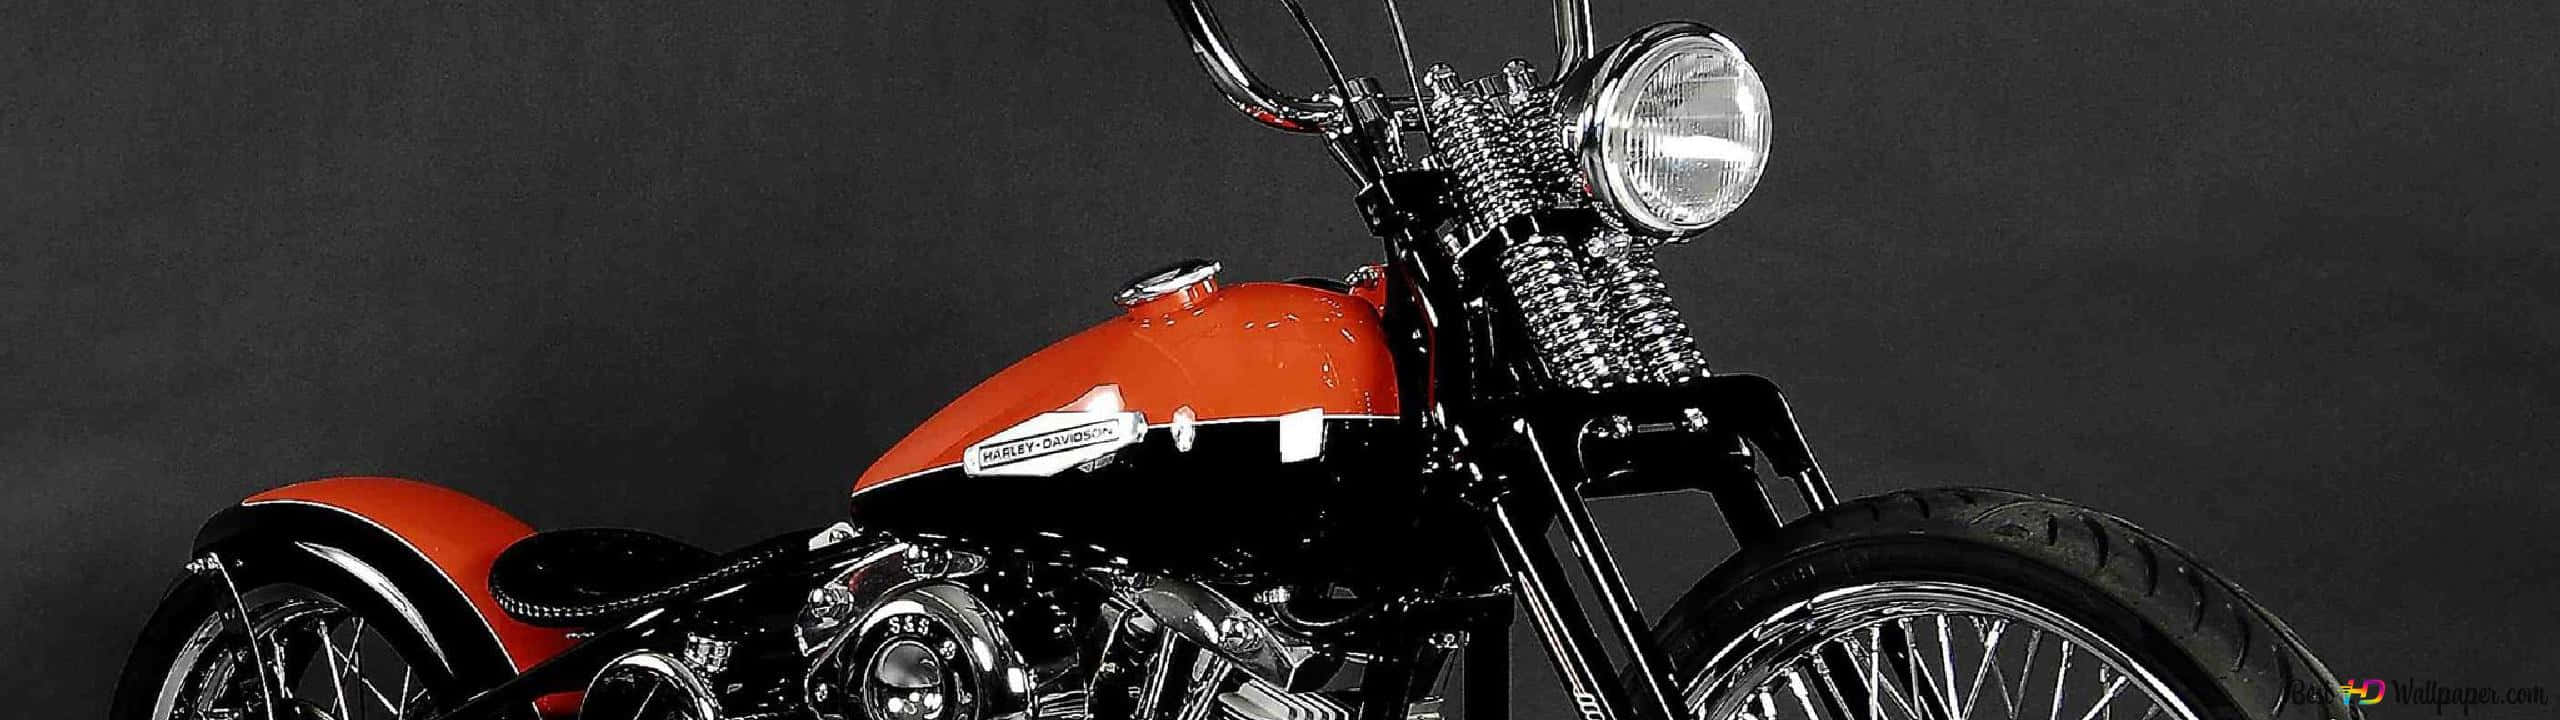 Enmajestätisk Harley-davidson Hd-motorcykel Parkerad På Gatan. Wallpaper